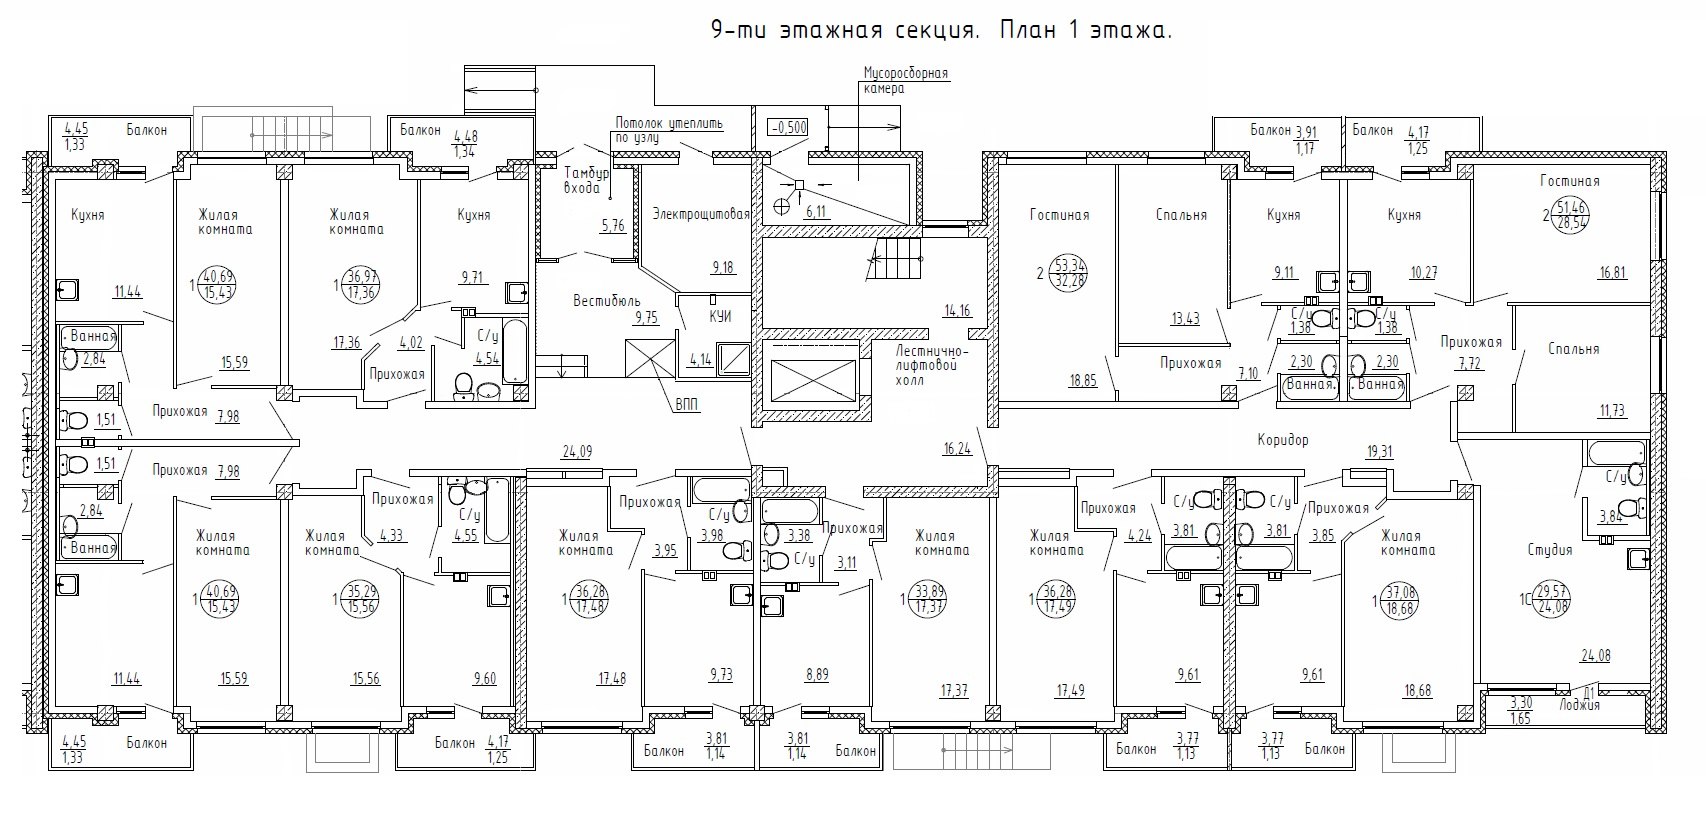 2а 12 корпус б. План первого этажа 9ти этажной секции. ЖК Терра планировки квартир. План 9ти этажного панельного дома. Схема квартиры многоэтажного дома.